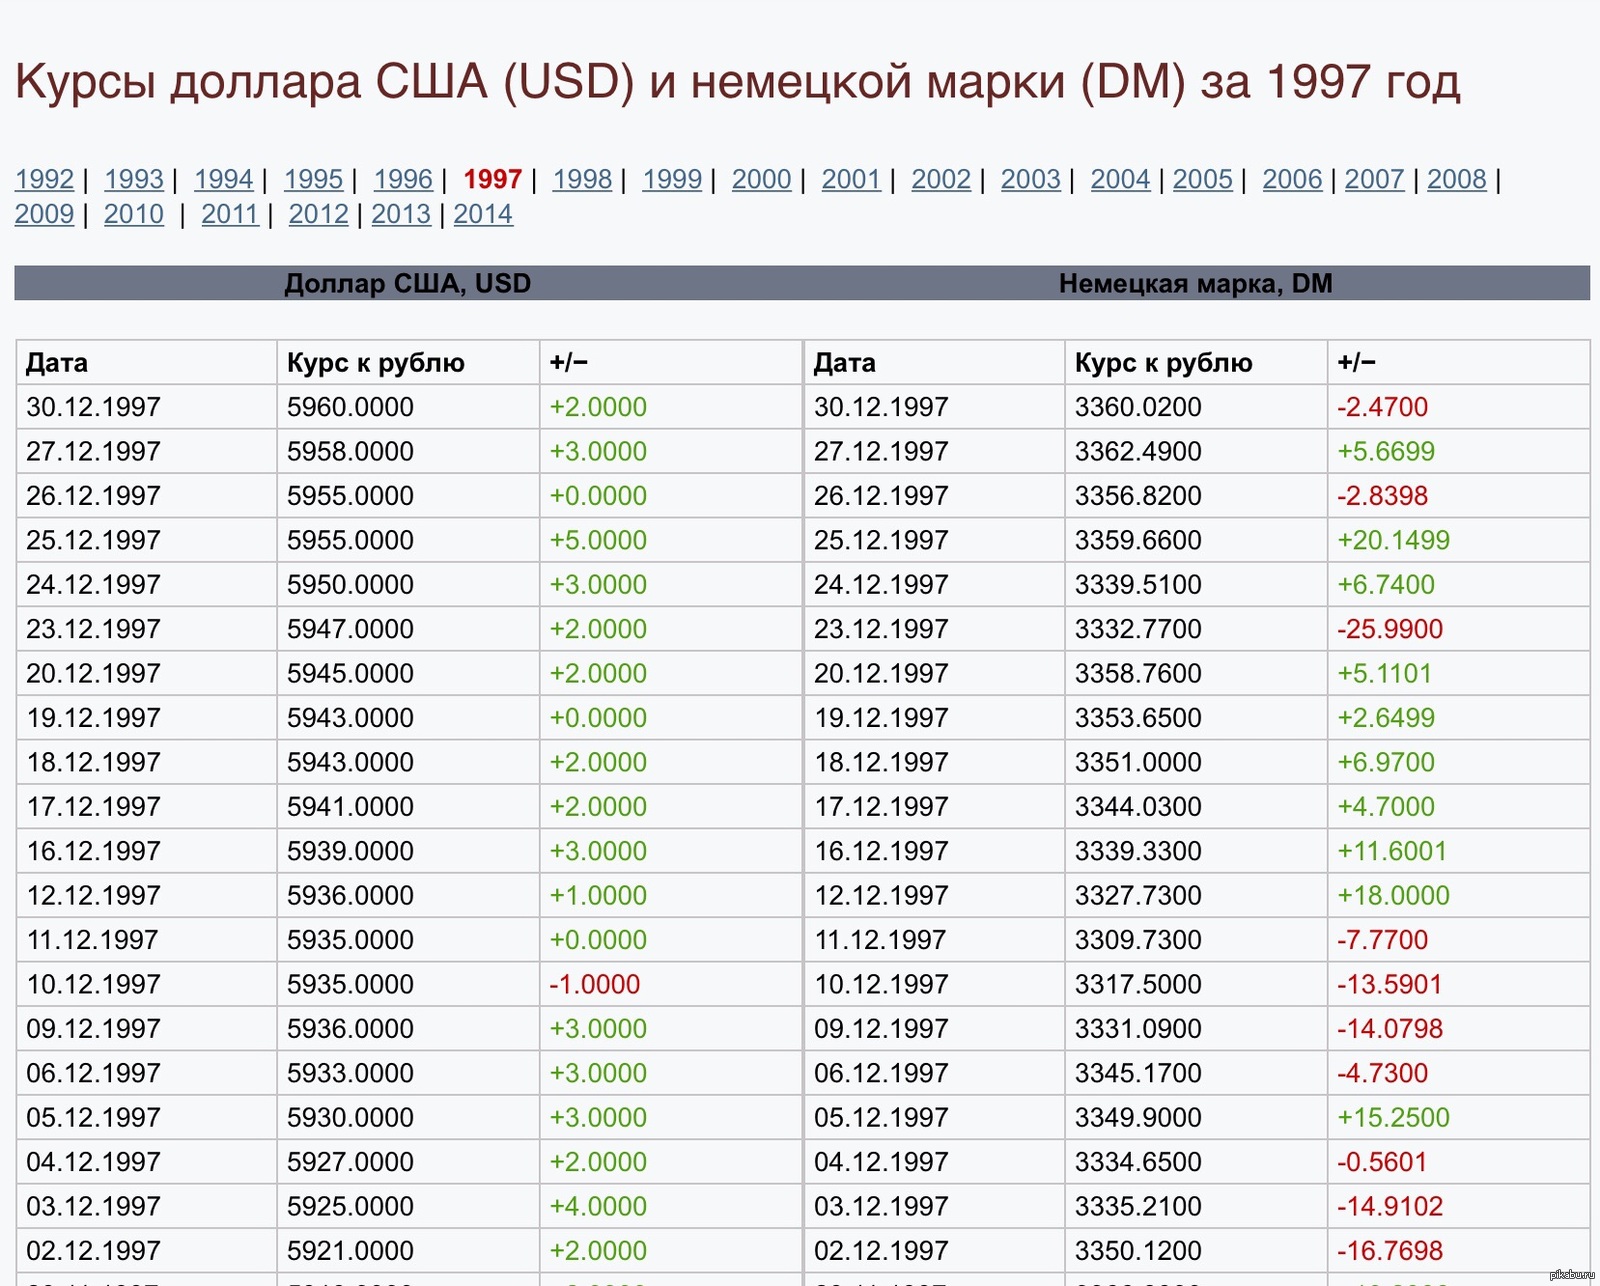 Сколько т доллар. Доллар в 1997 году в рублях. Курс доллара таблица. Курс доллара в 1997 году. Доллар в 1997 году курс к рублю.